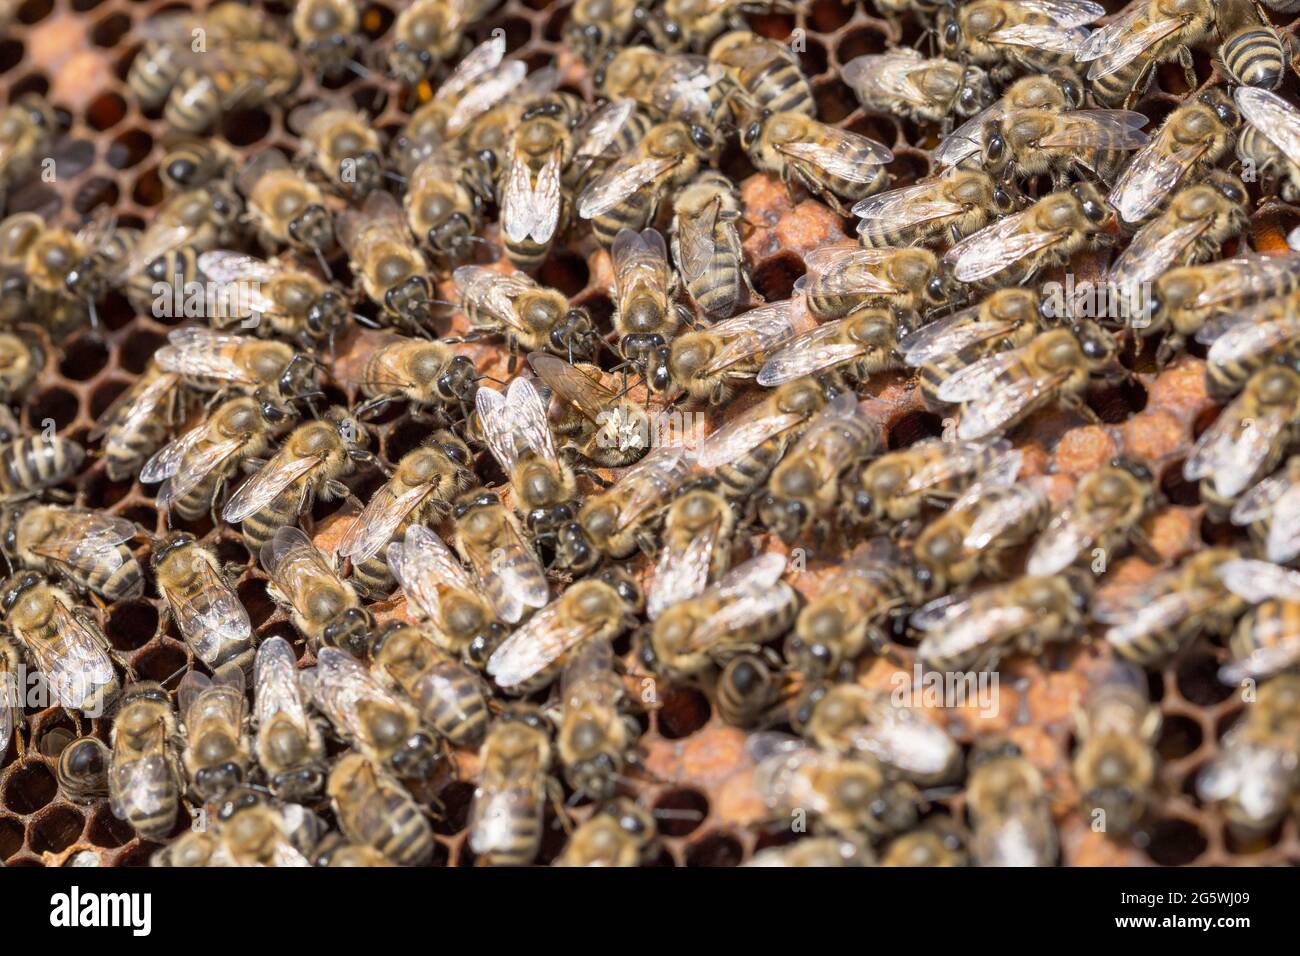 Panal de miel, abejas, miel en sellado y no sellado su célula y polen - cierre Foto de stock